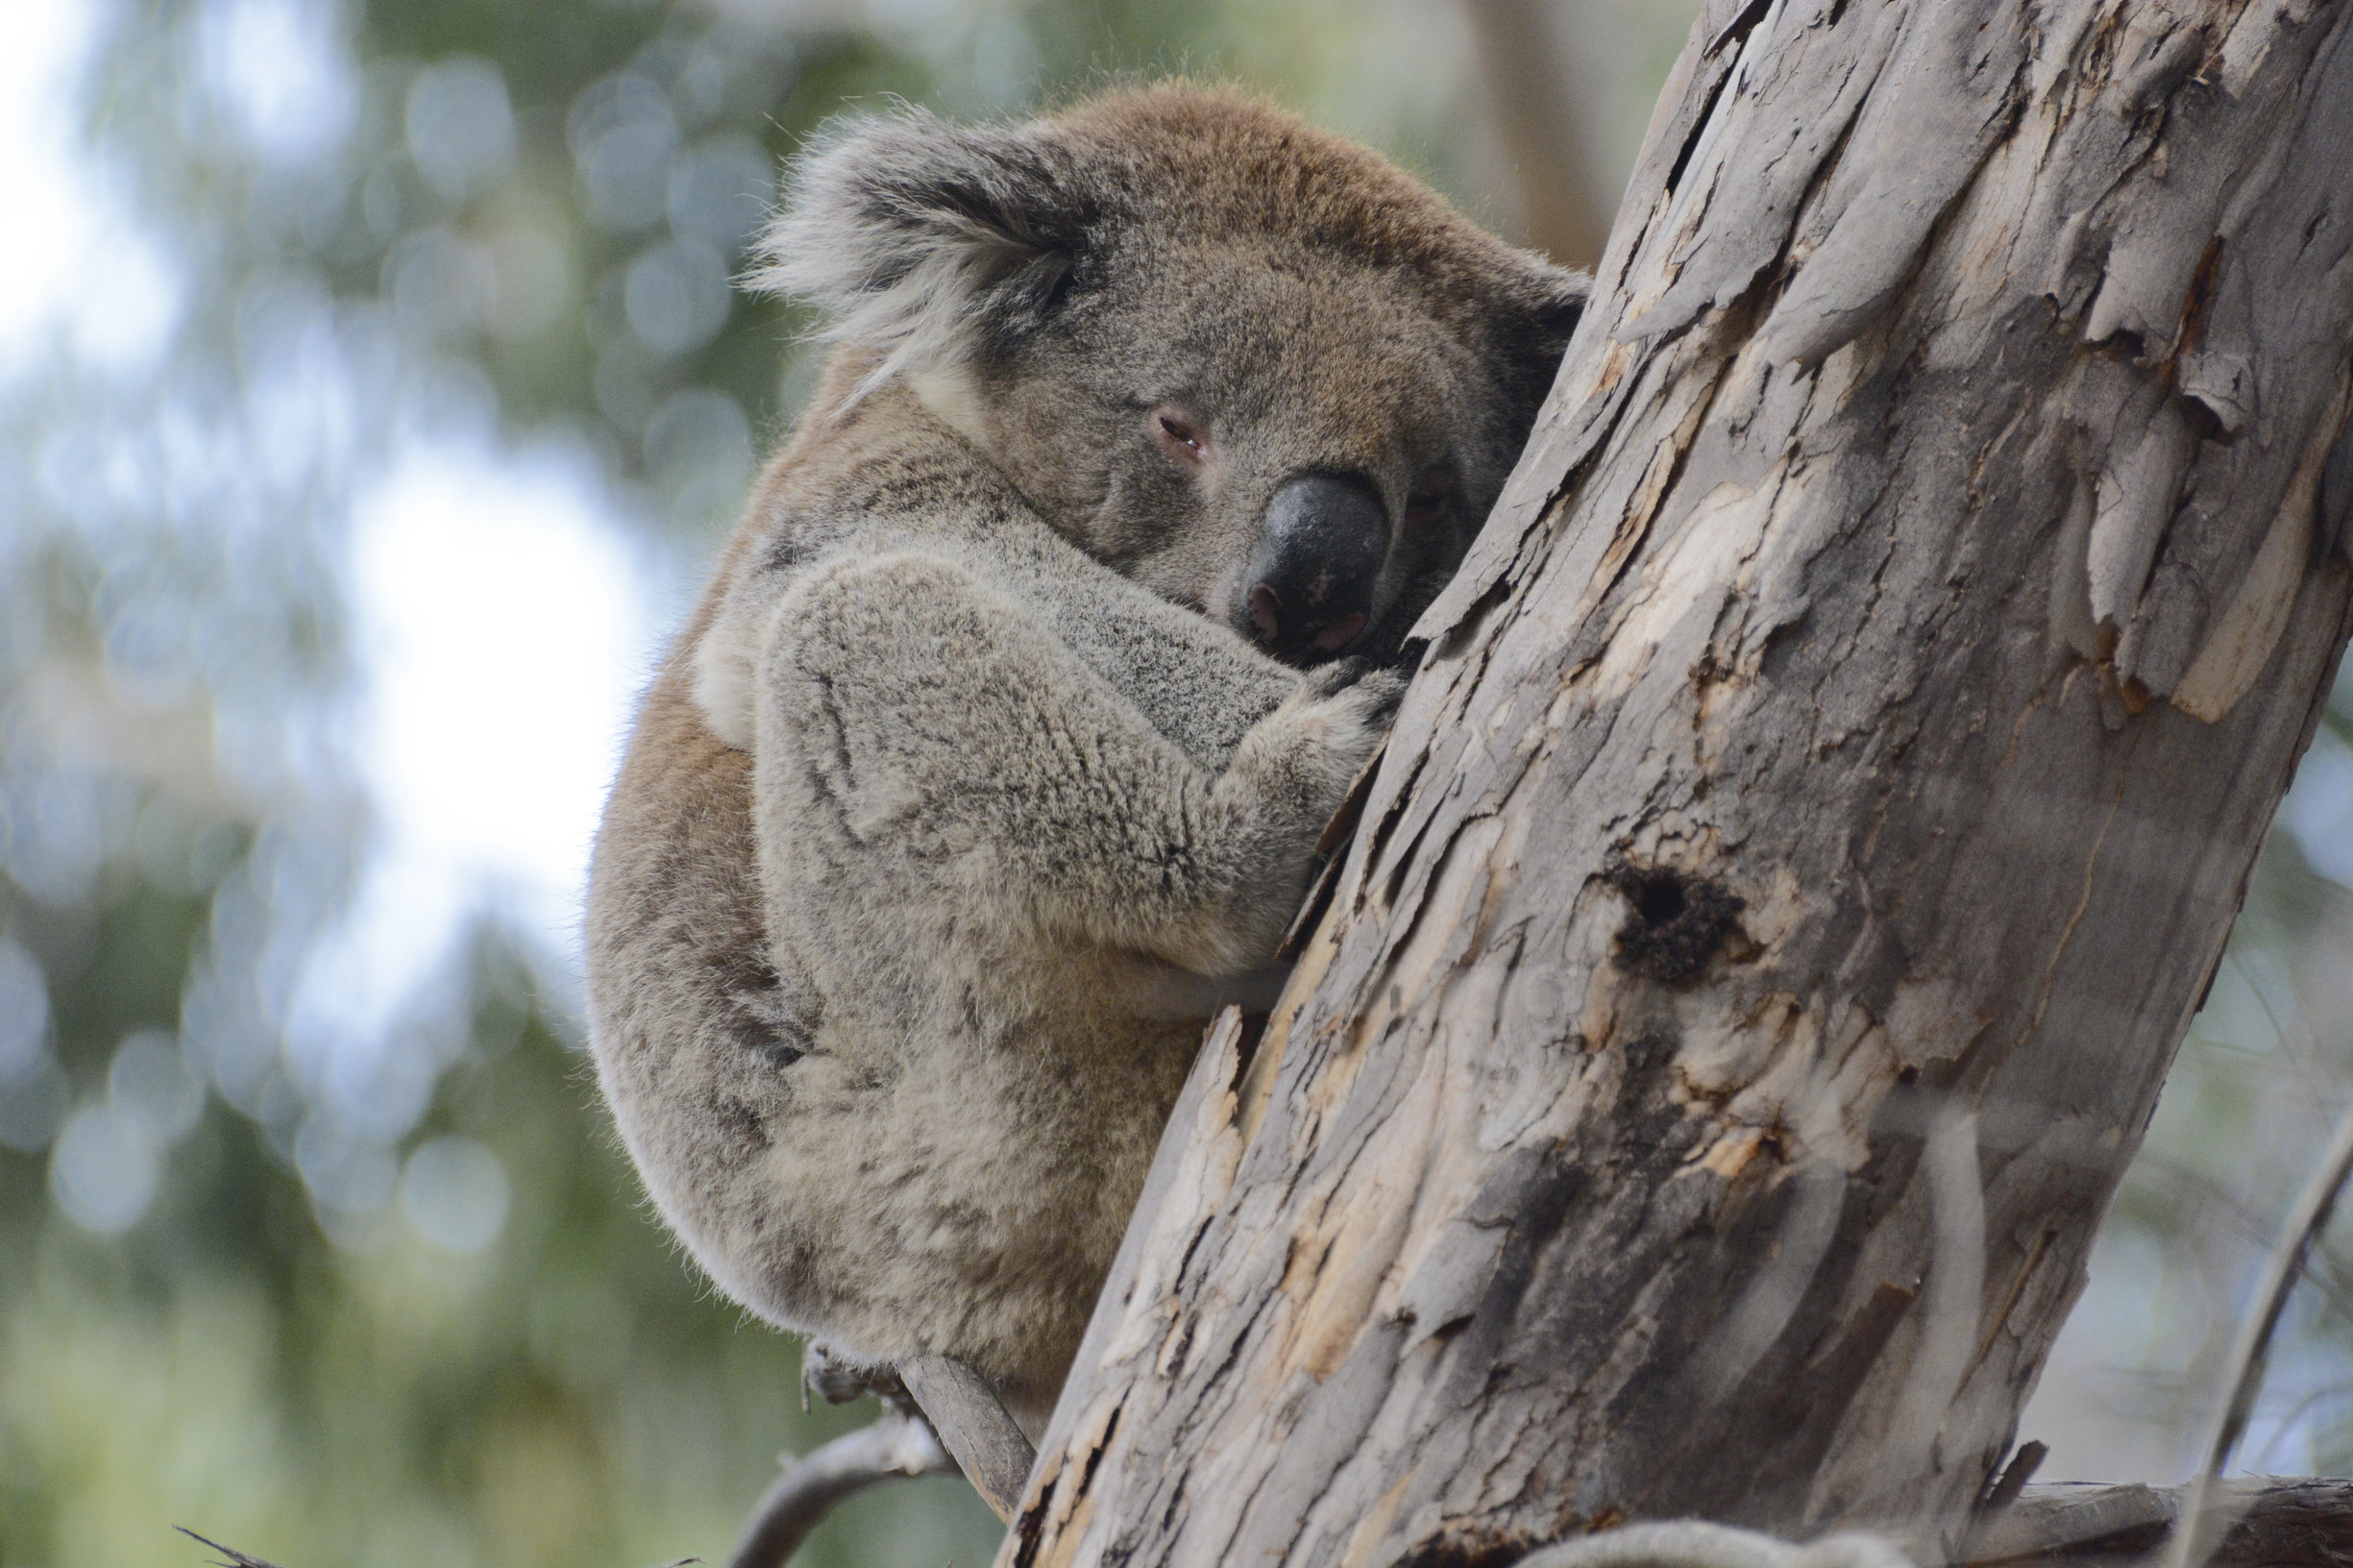 Wild about Koalas. Where to see koalas in the Wild.